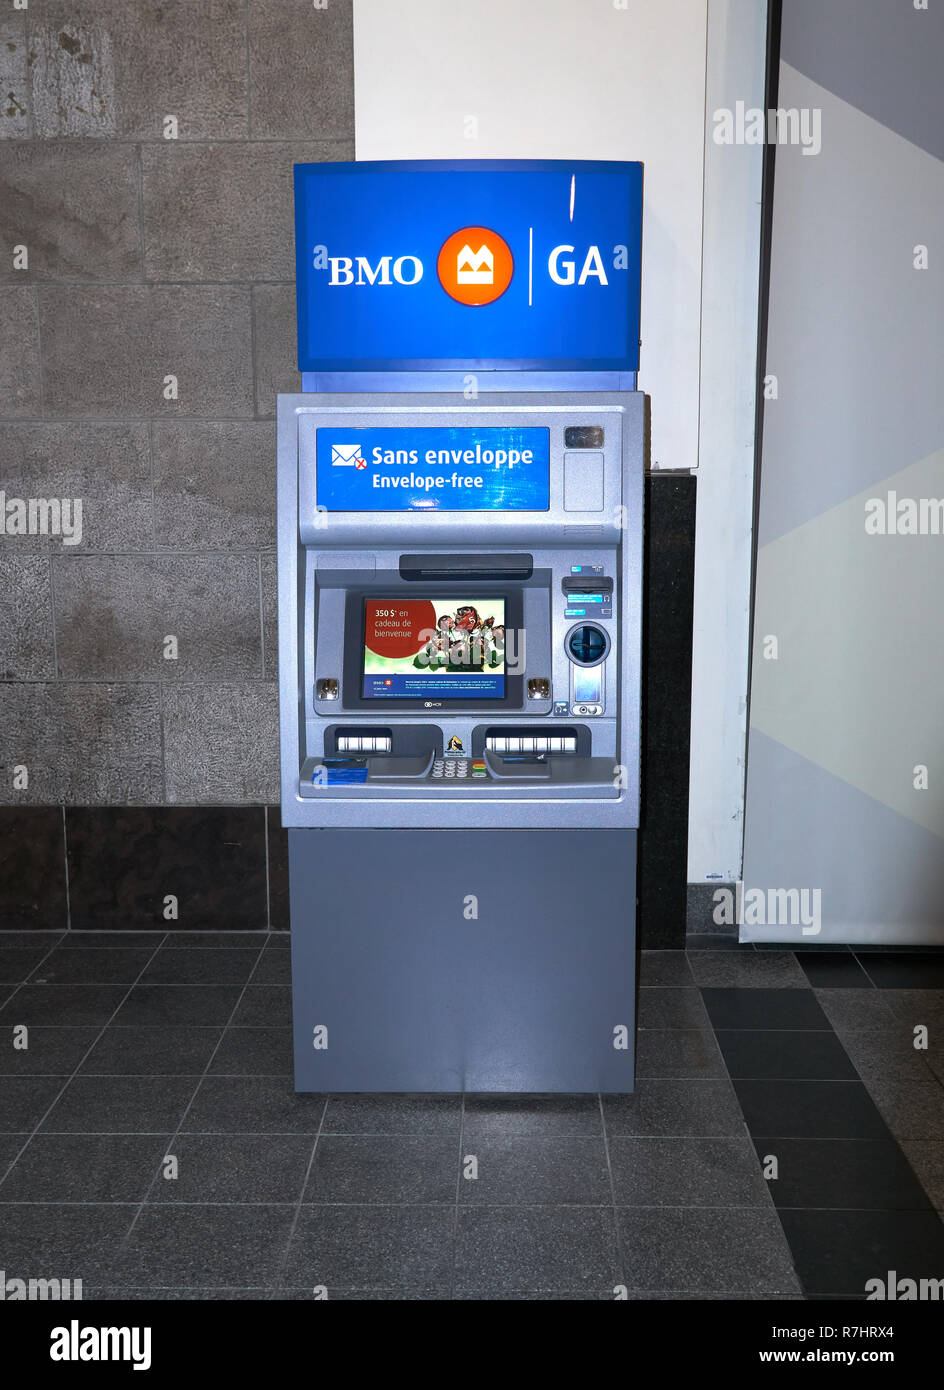 MONTREAL, Canadá - 4 de octubre de 2018: Bank of Montreal ATM. Bank of Montreal - BMO , es una multinacional canadiense el banco de inversiones y servicios financieros Foto de stock